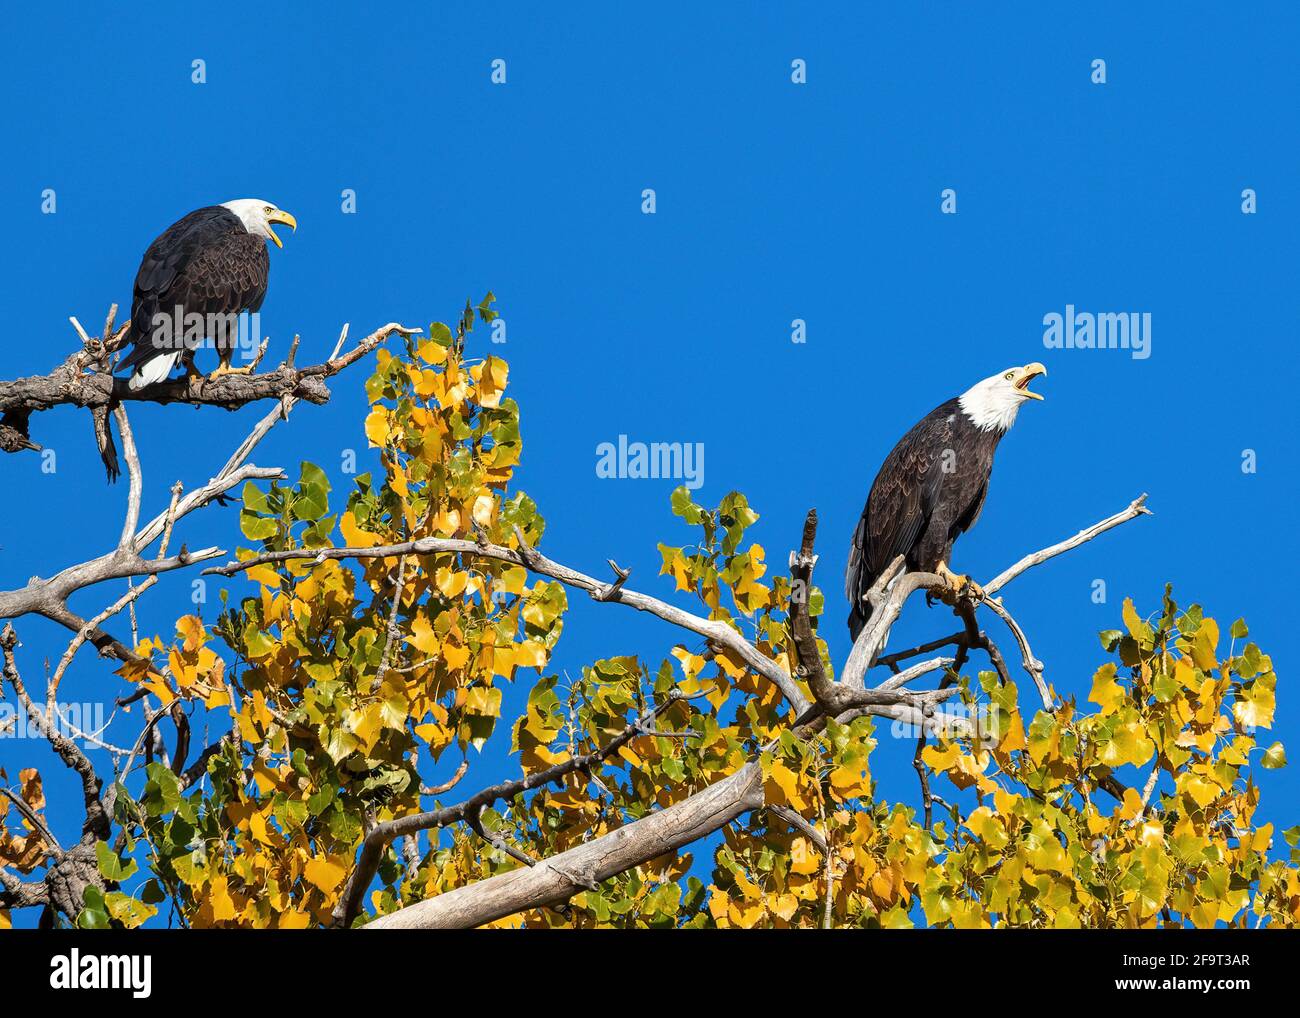 Deux pygargues à tête de Bald accouplées, au sommet d'un grand arbre de Cottonwood, se faisant découvrir de la nature, avec un ciel bleu profond et un feuillage changeant en automne. Banque D'Images